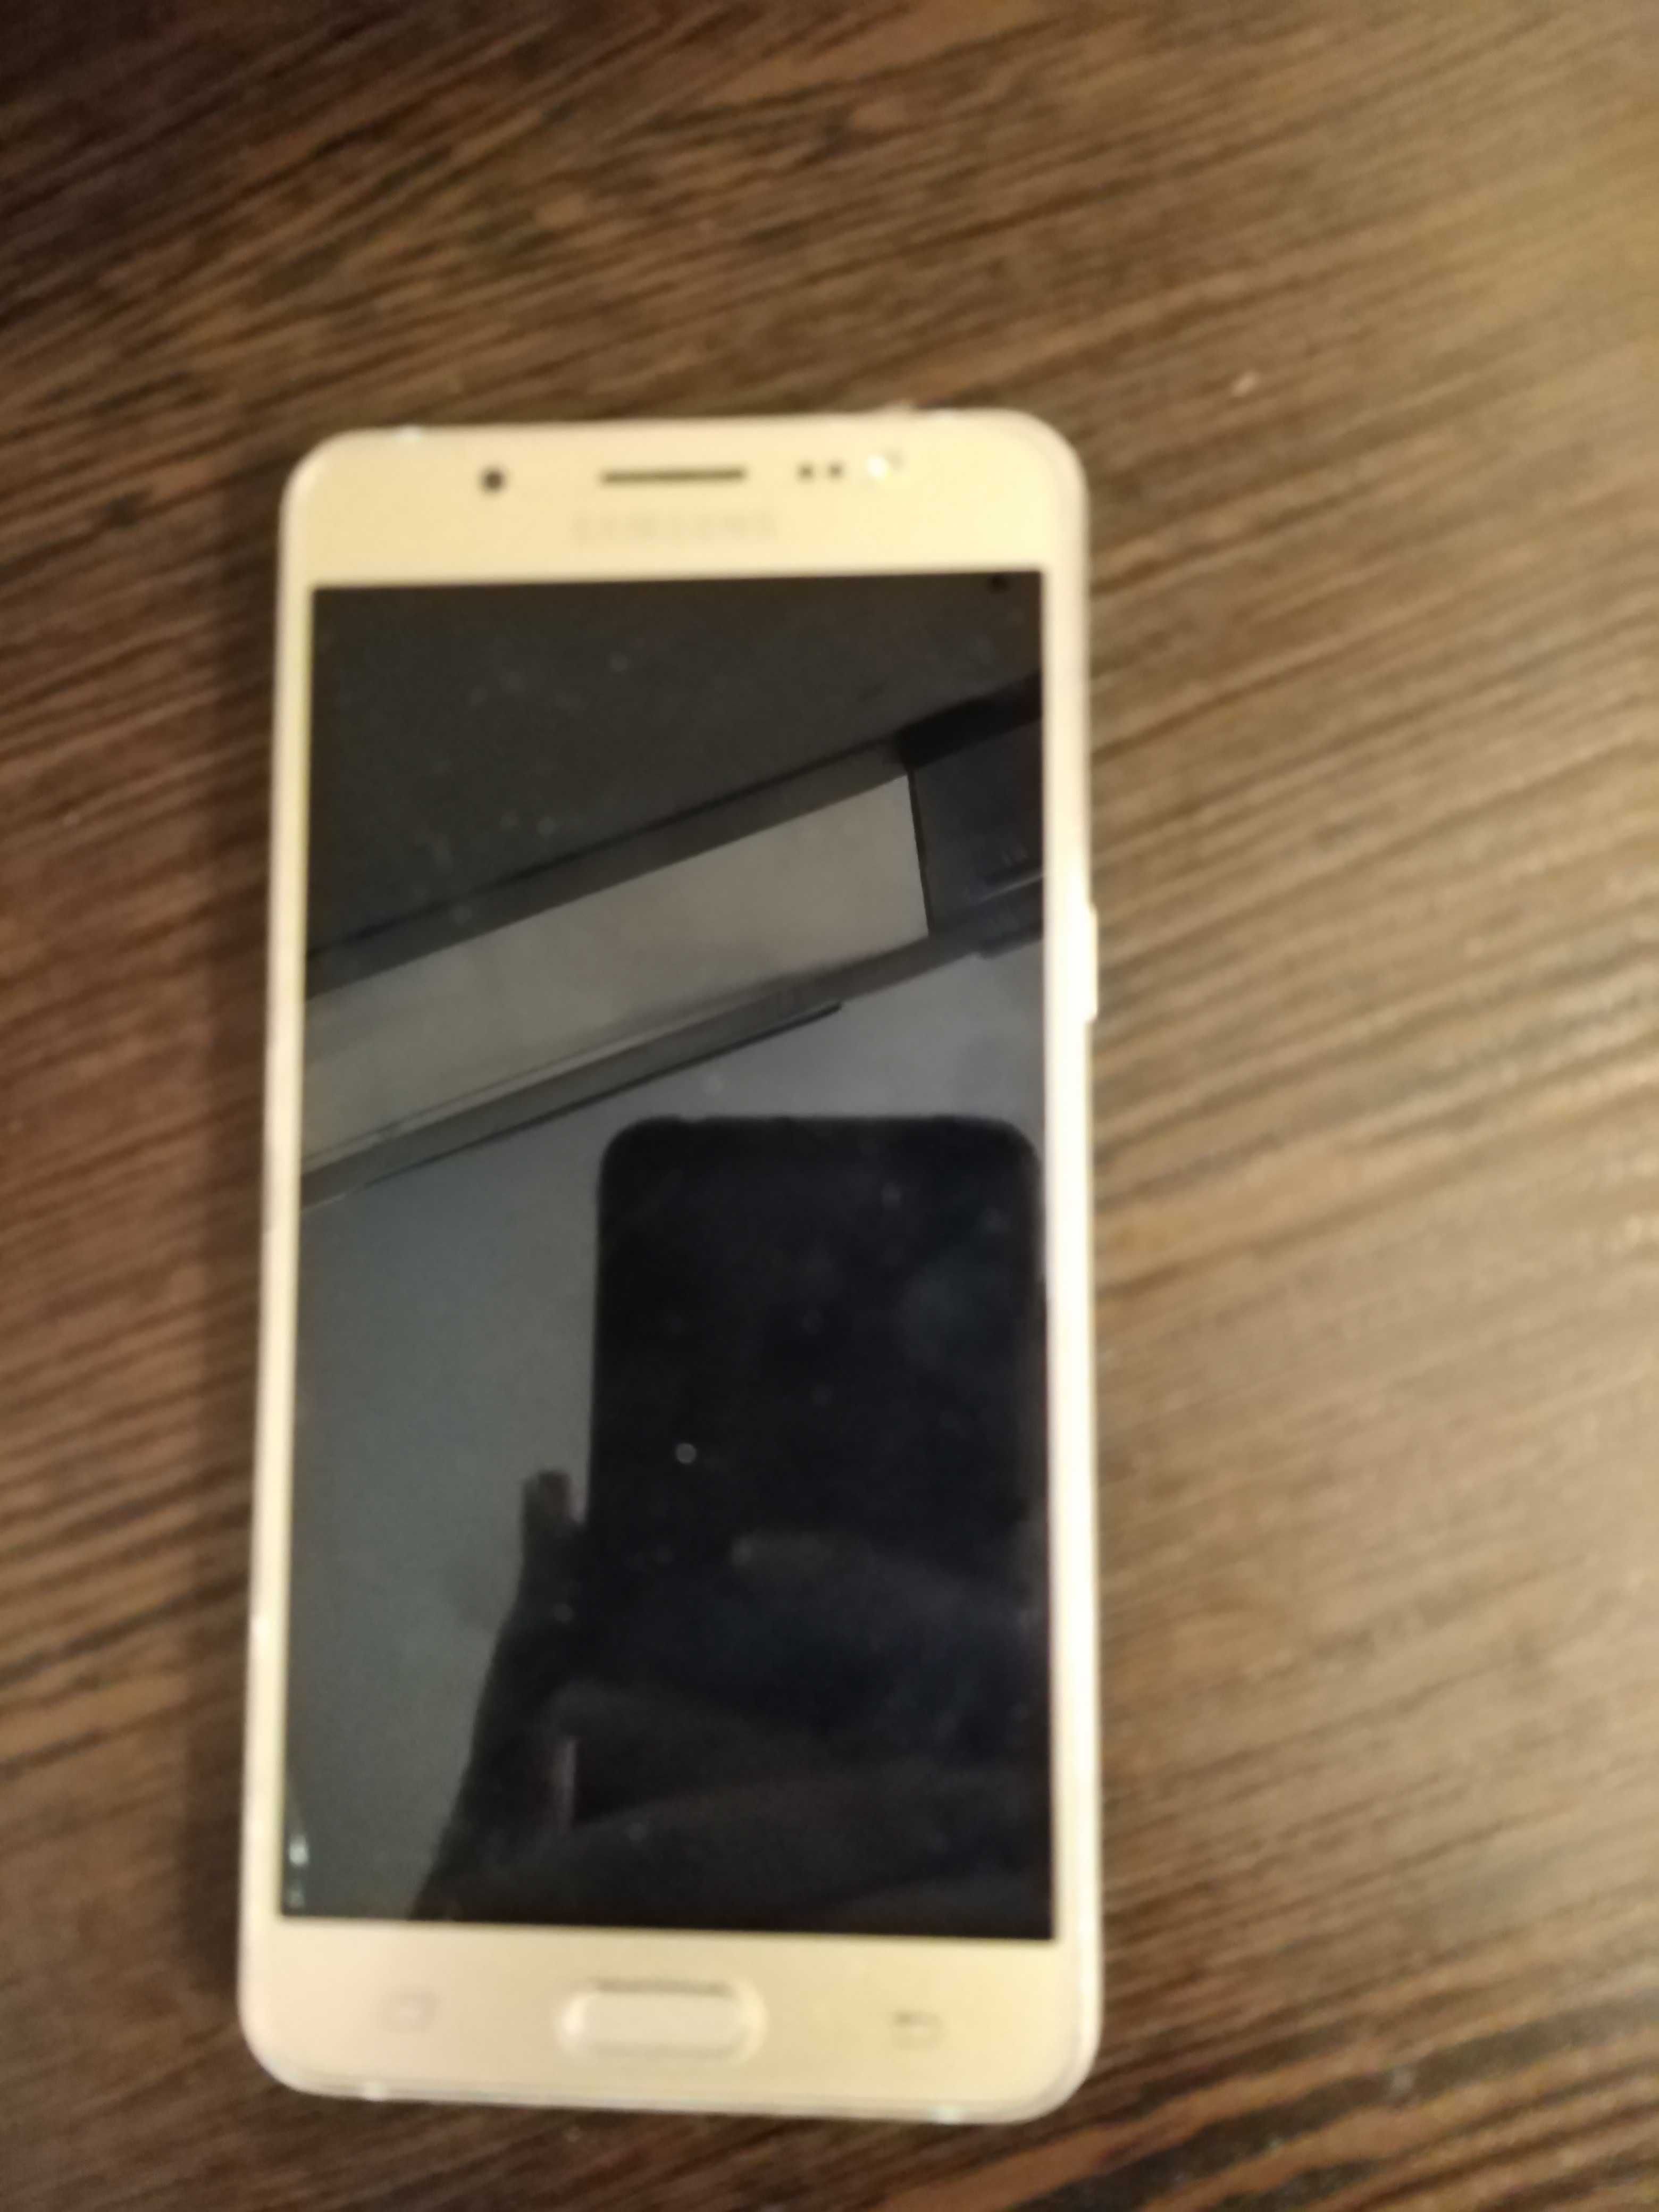 Продам телефон Samsung J5 (2016) Gold